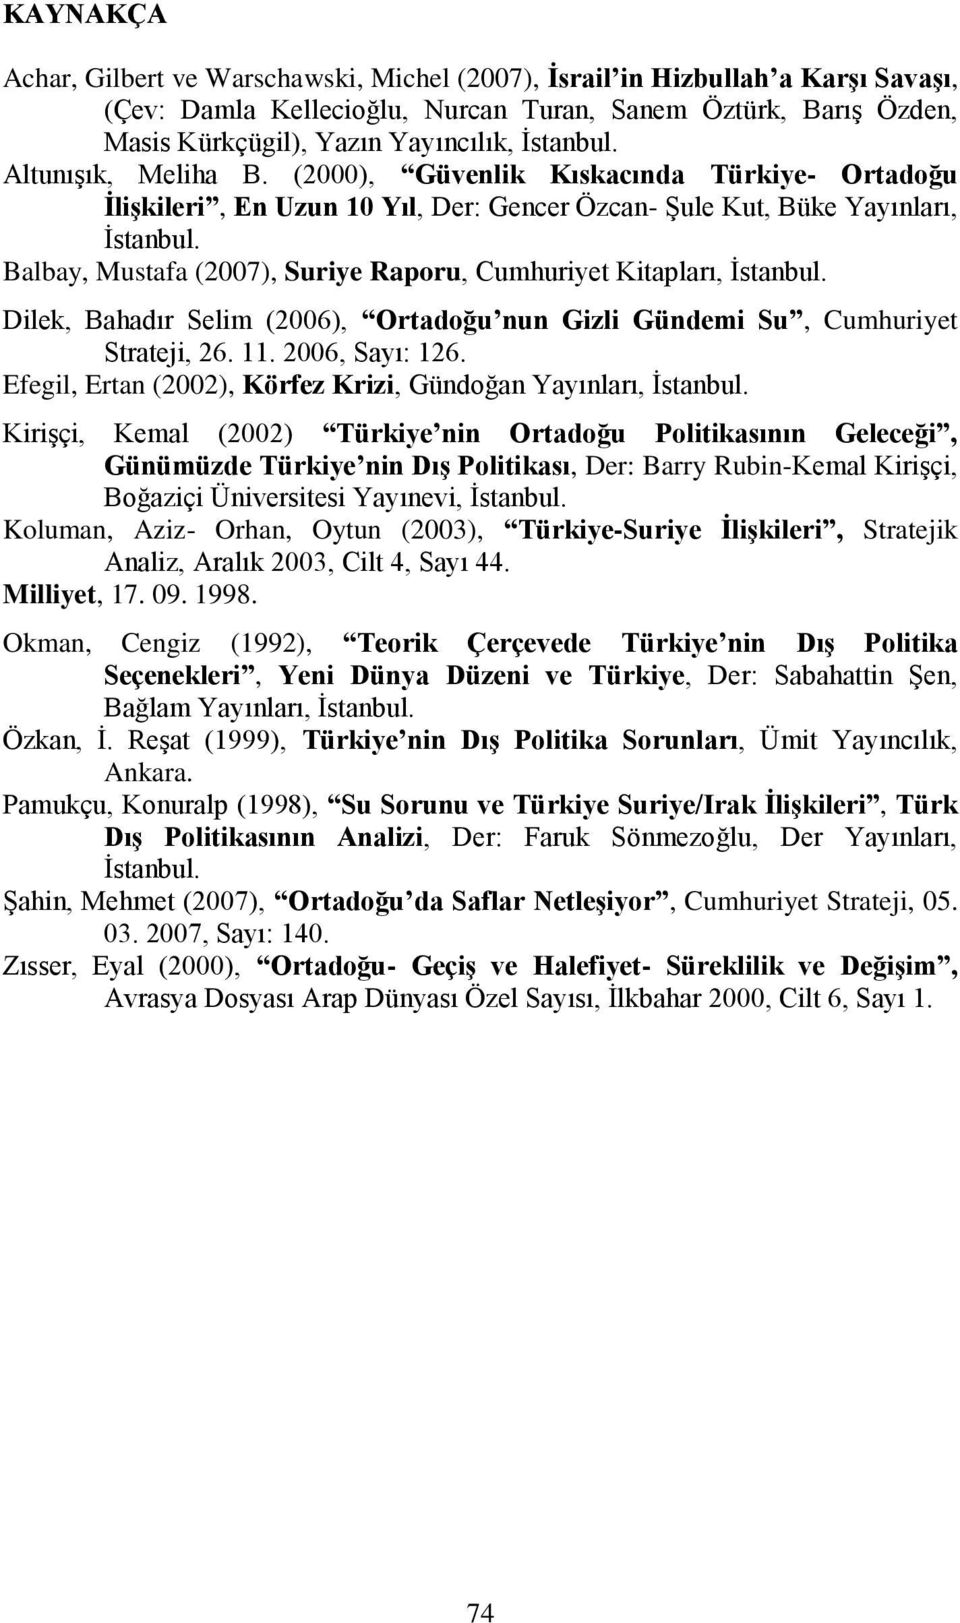 Balbay, Mustafa (2007), Suriye Raporu, Cumhuriyet Kitapları, Ġstanbul. Dilek, Bahadır Selim (2006), Ortadoğu nun Gizli Gündemi Su, Cumhuriyet Strateji, 26. 11. 2006, Sayı: 126.